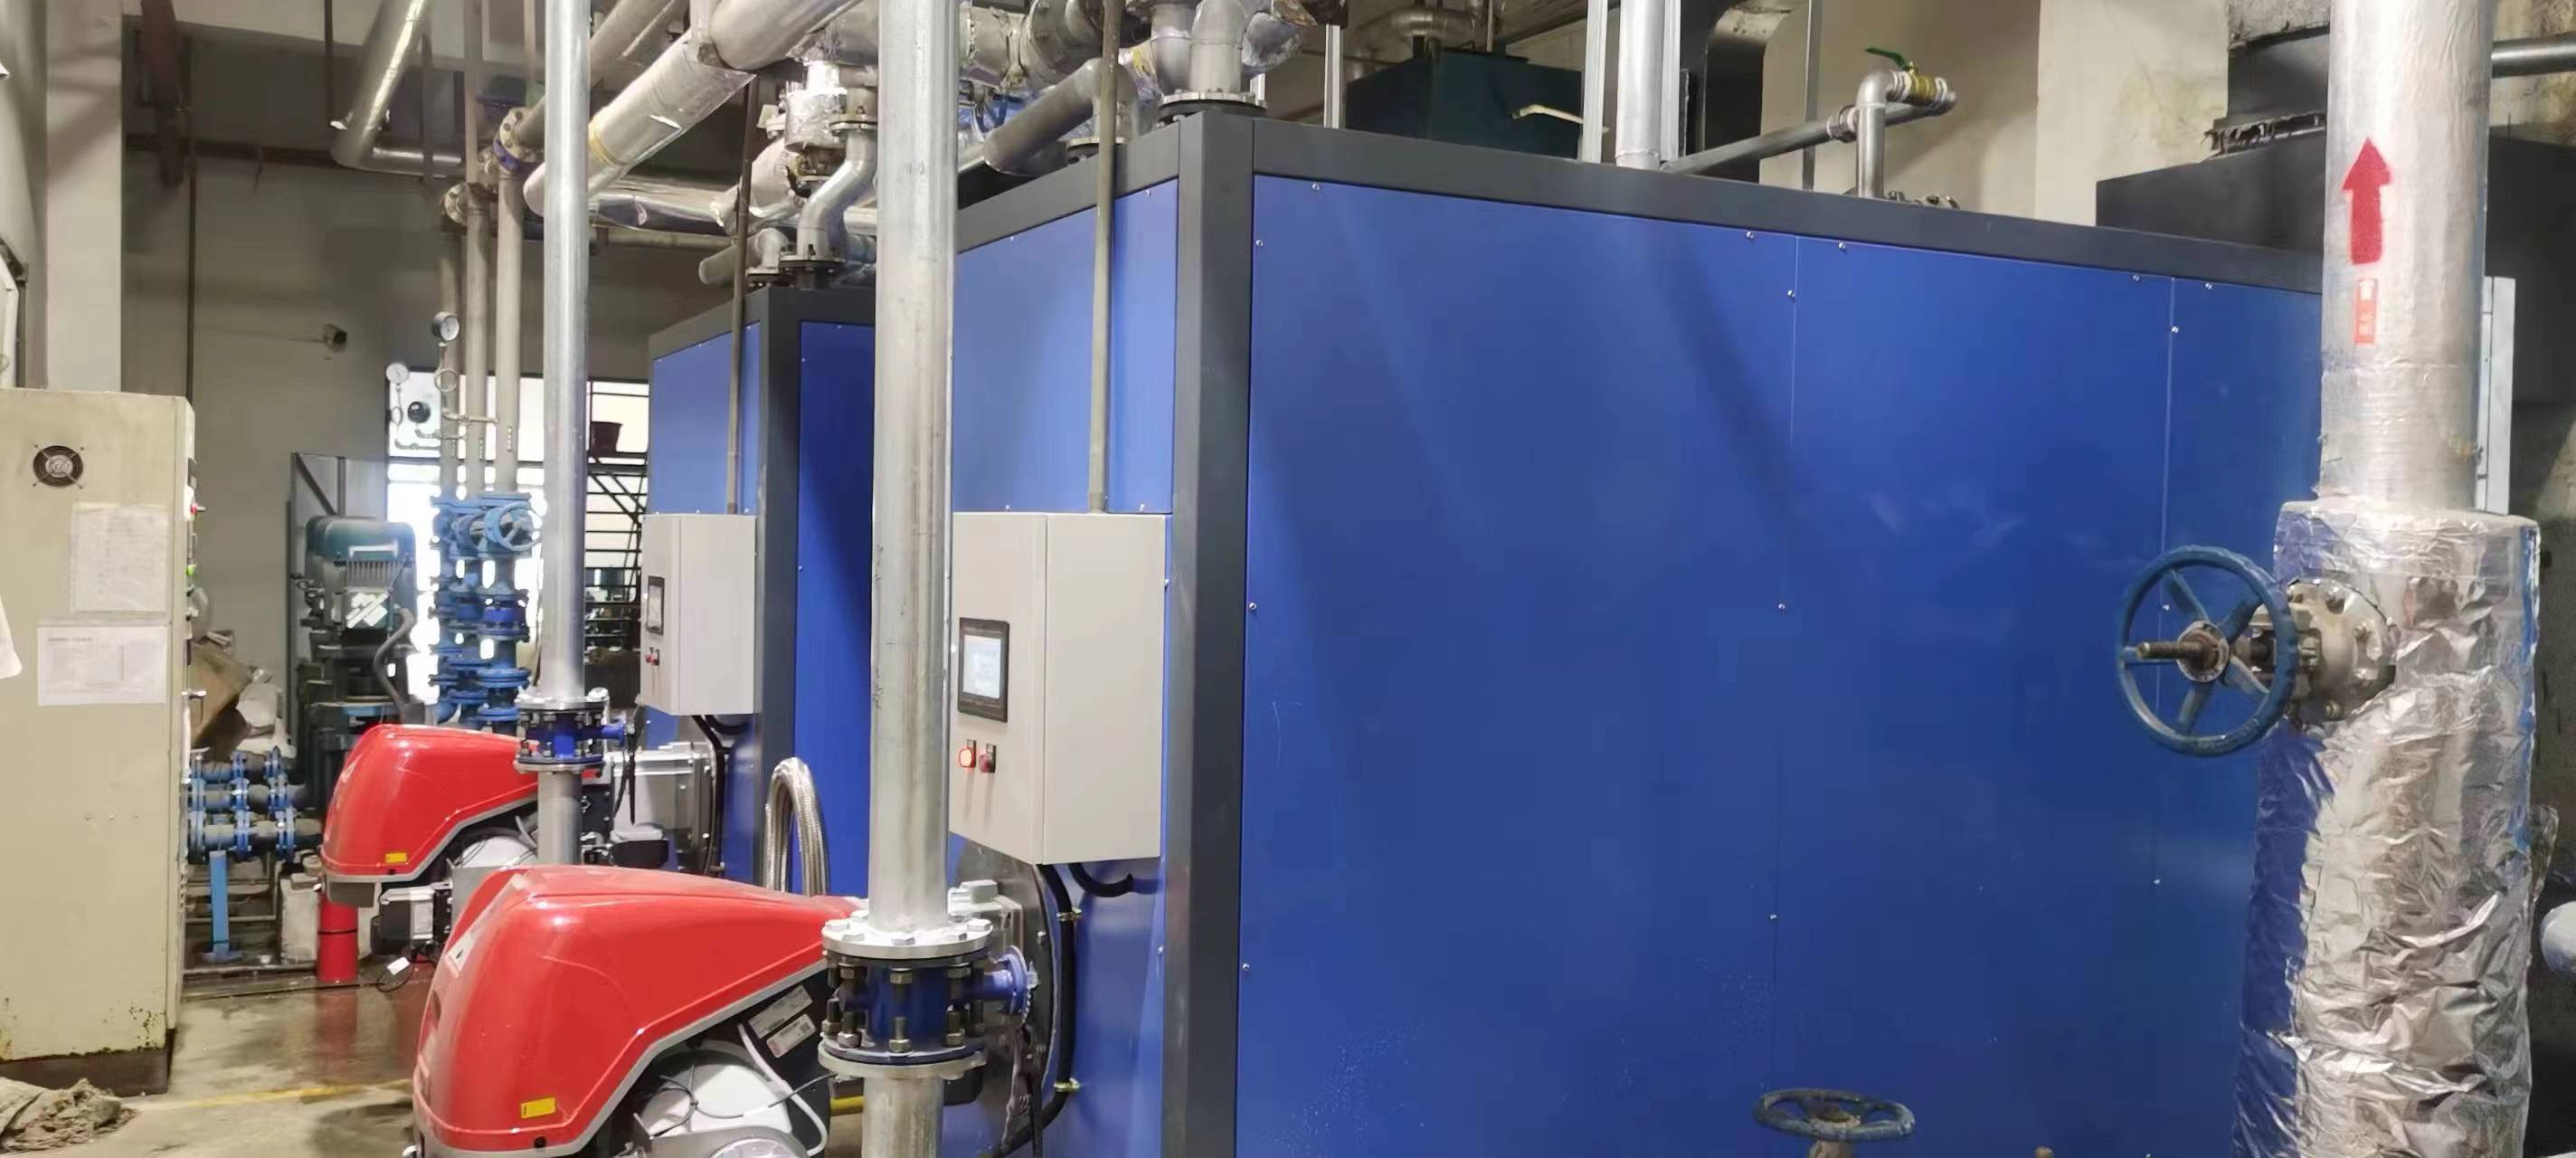 佛山富士康集团 两台80万大卡内置换热器低氮燃气热水炉